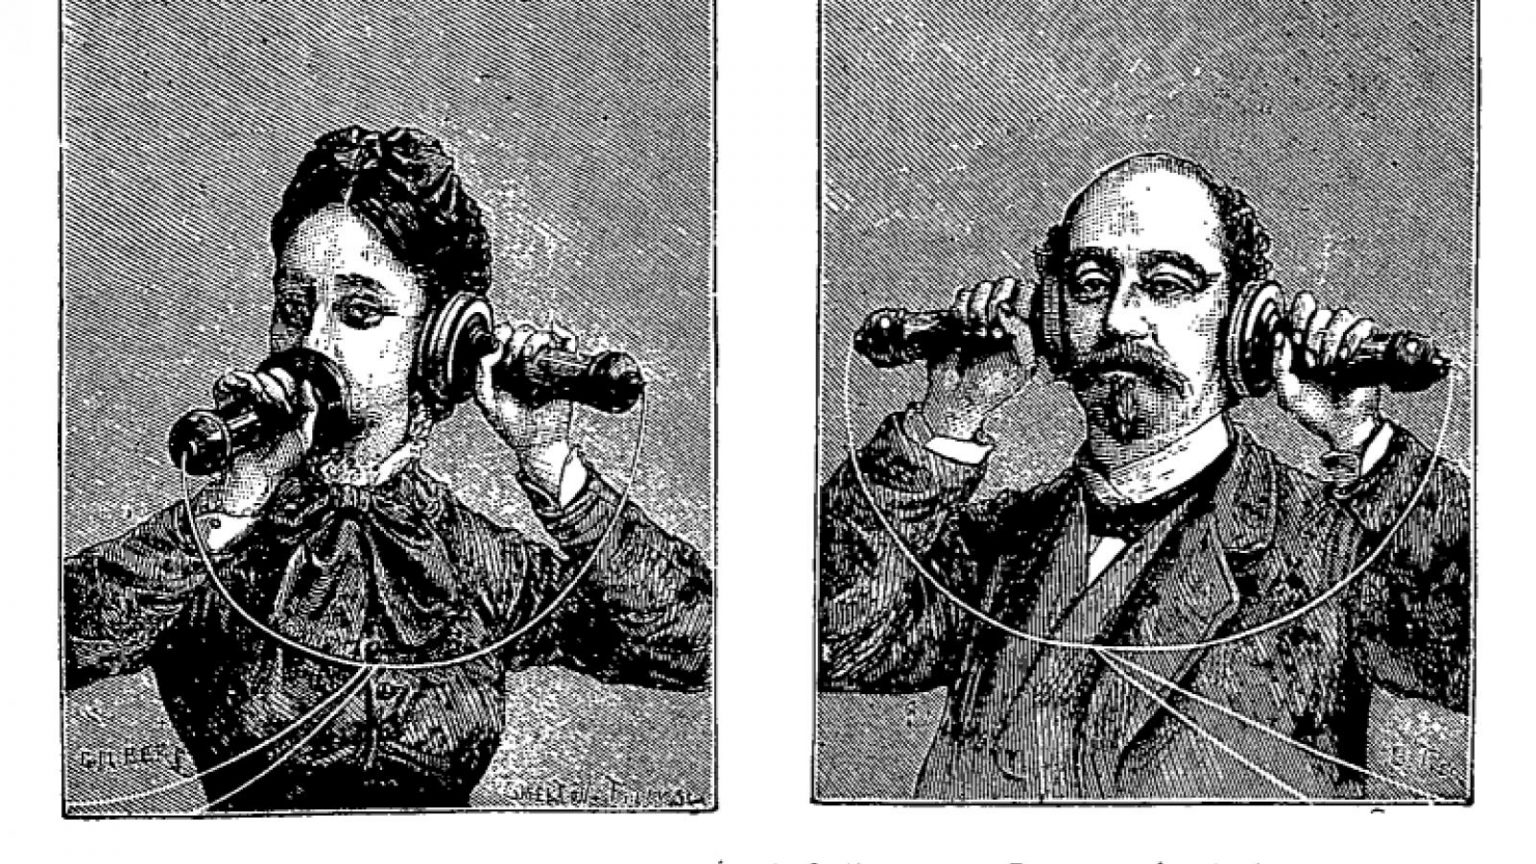 Первое общение в истории. Первый телефон. Первыйф телефон в Росси. Первый телефон в России. Телефонный аппарат конца 19 века.